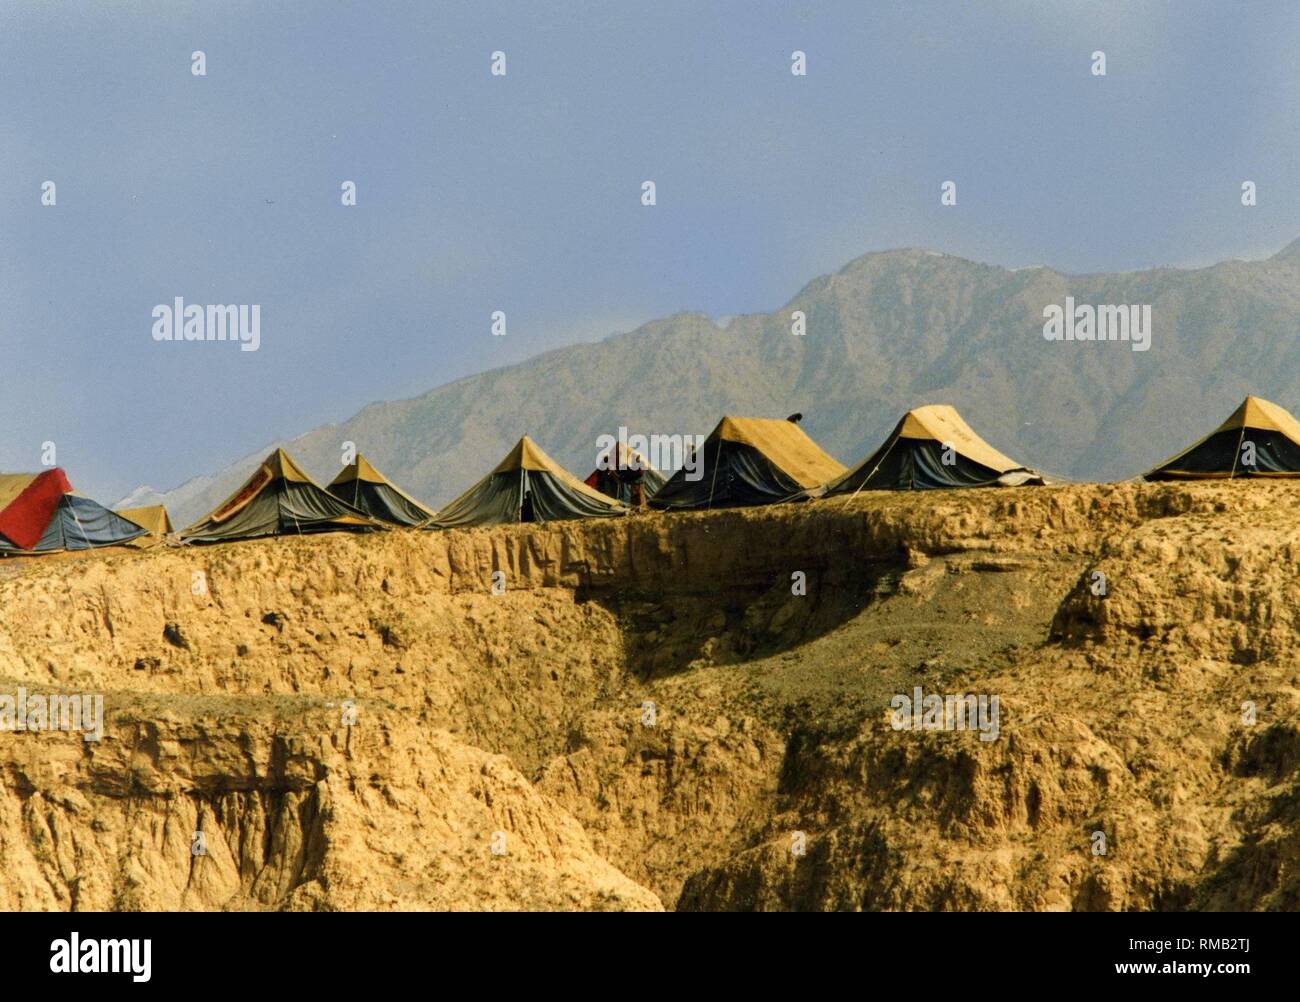 Flüchtlingslager aus der Zeit der sowjetischen Besetzung Afghanistans. Tausende Flüchtlinge leben auf einem baumlosen Ebene an der afghanischen Grenze. Stockfoto